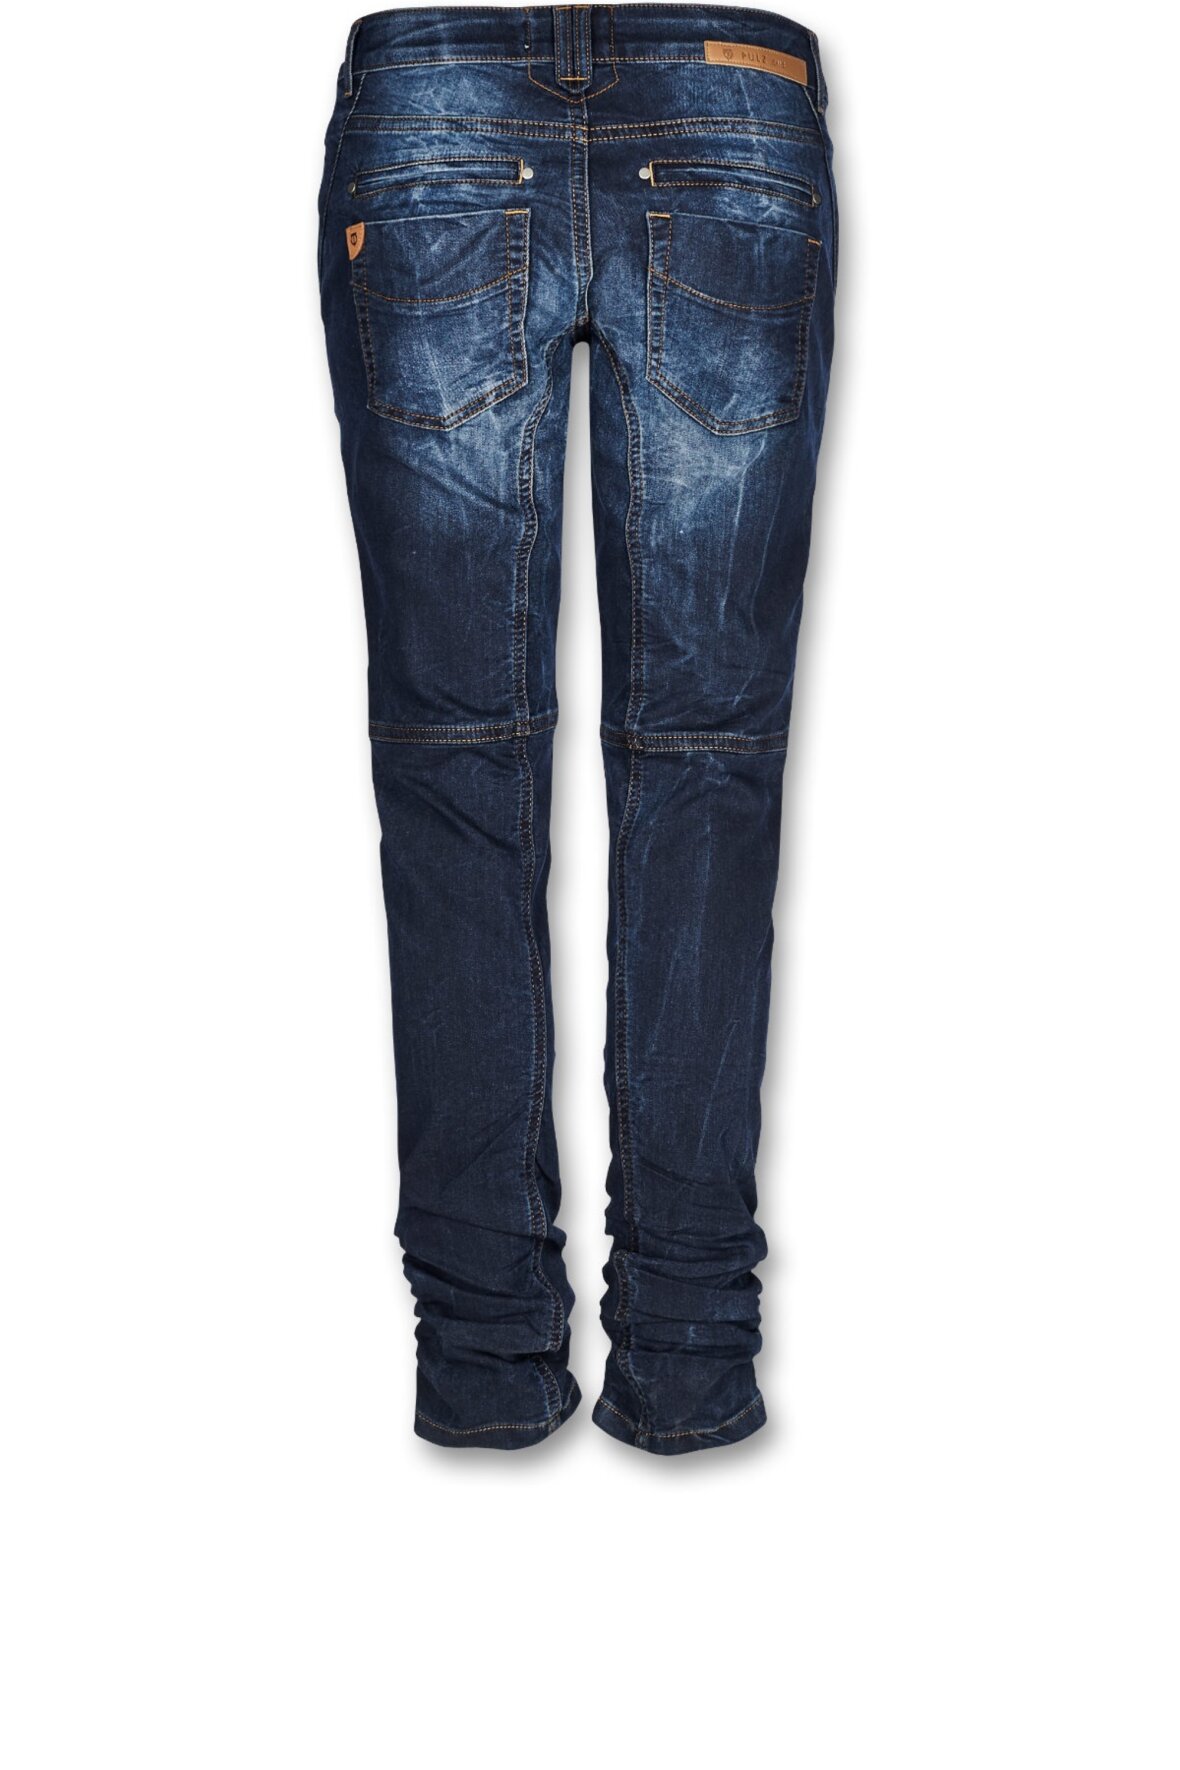 overdrive Revival Piping Pulz Faylinn Skinny Jeans, Dark Blue Regular buks, 50201774 - Hos Lohse